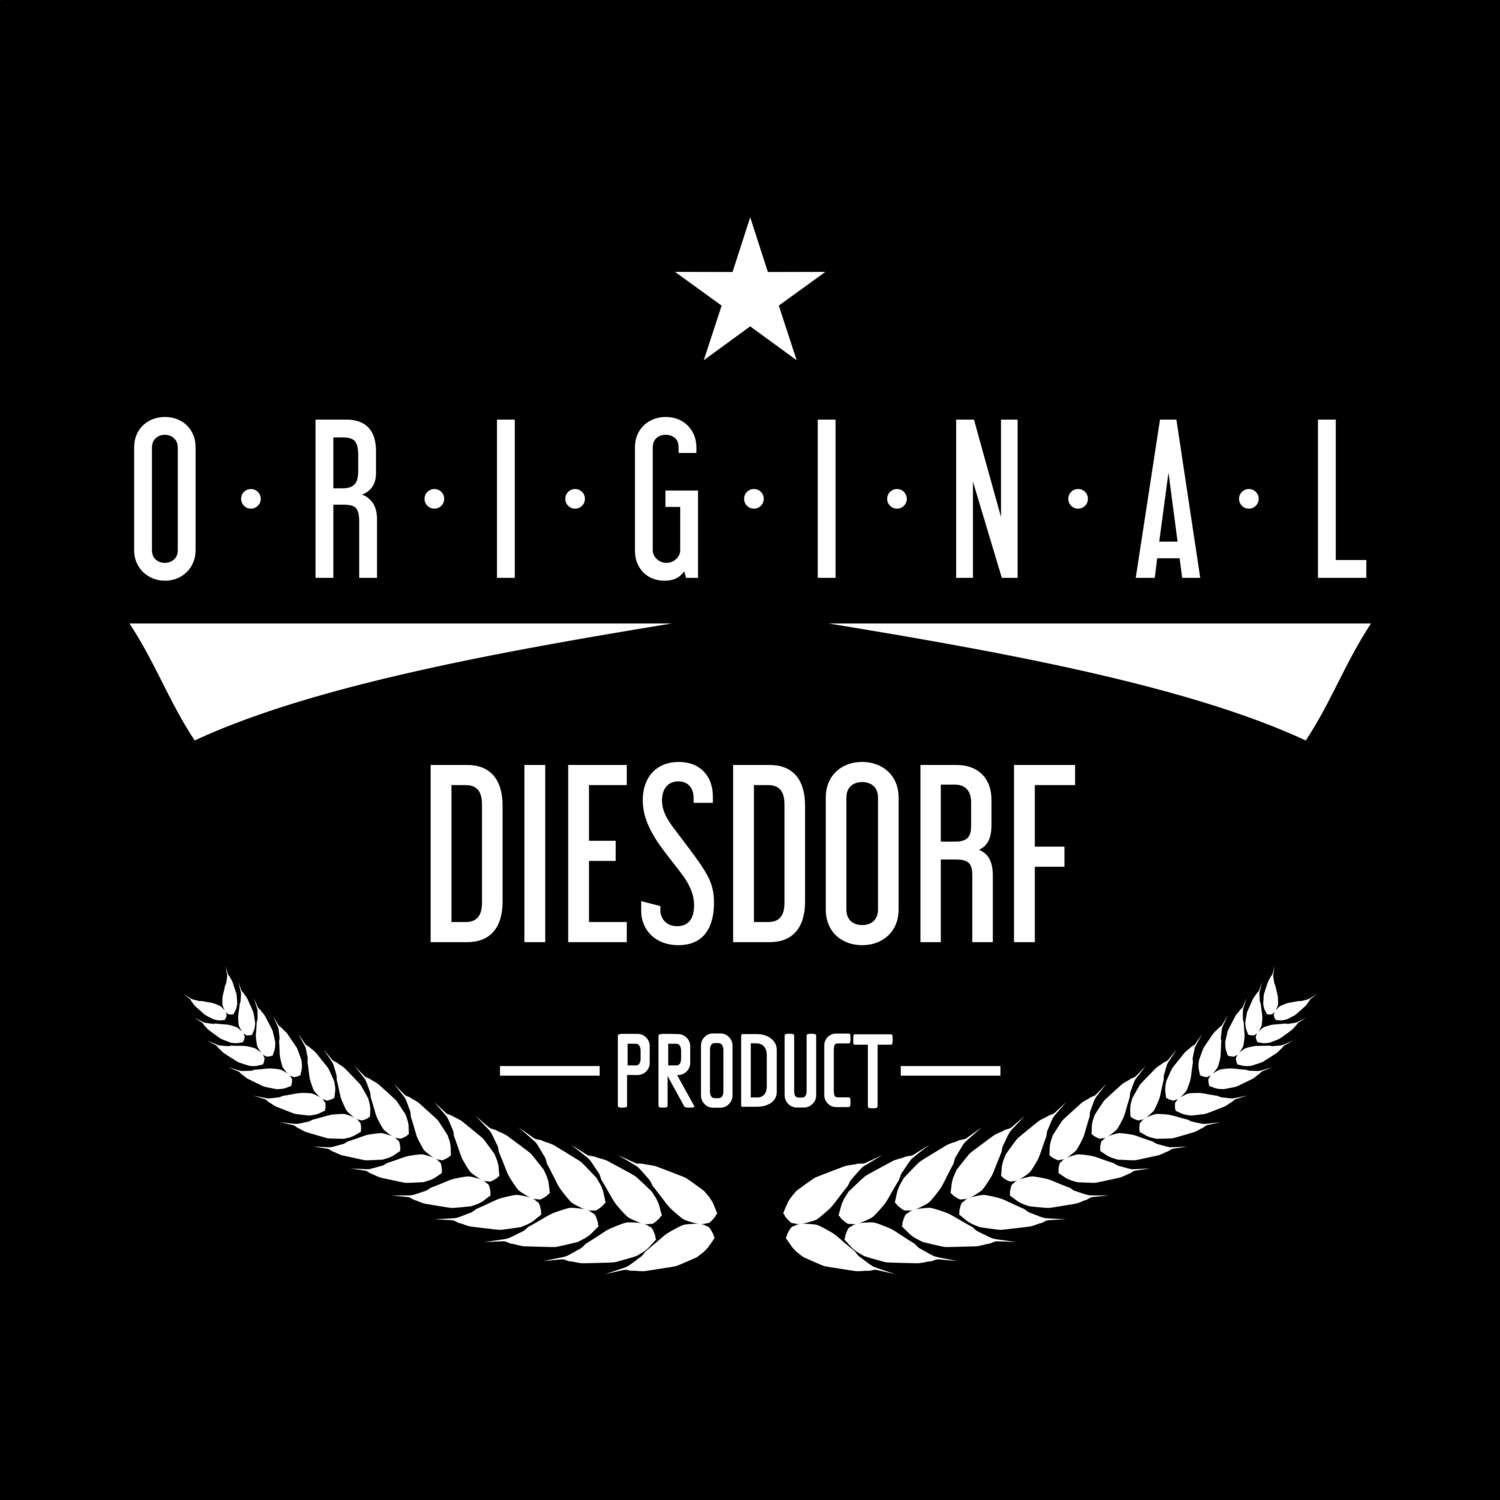 Diesdorf T-Shirt »Original Product«